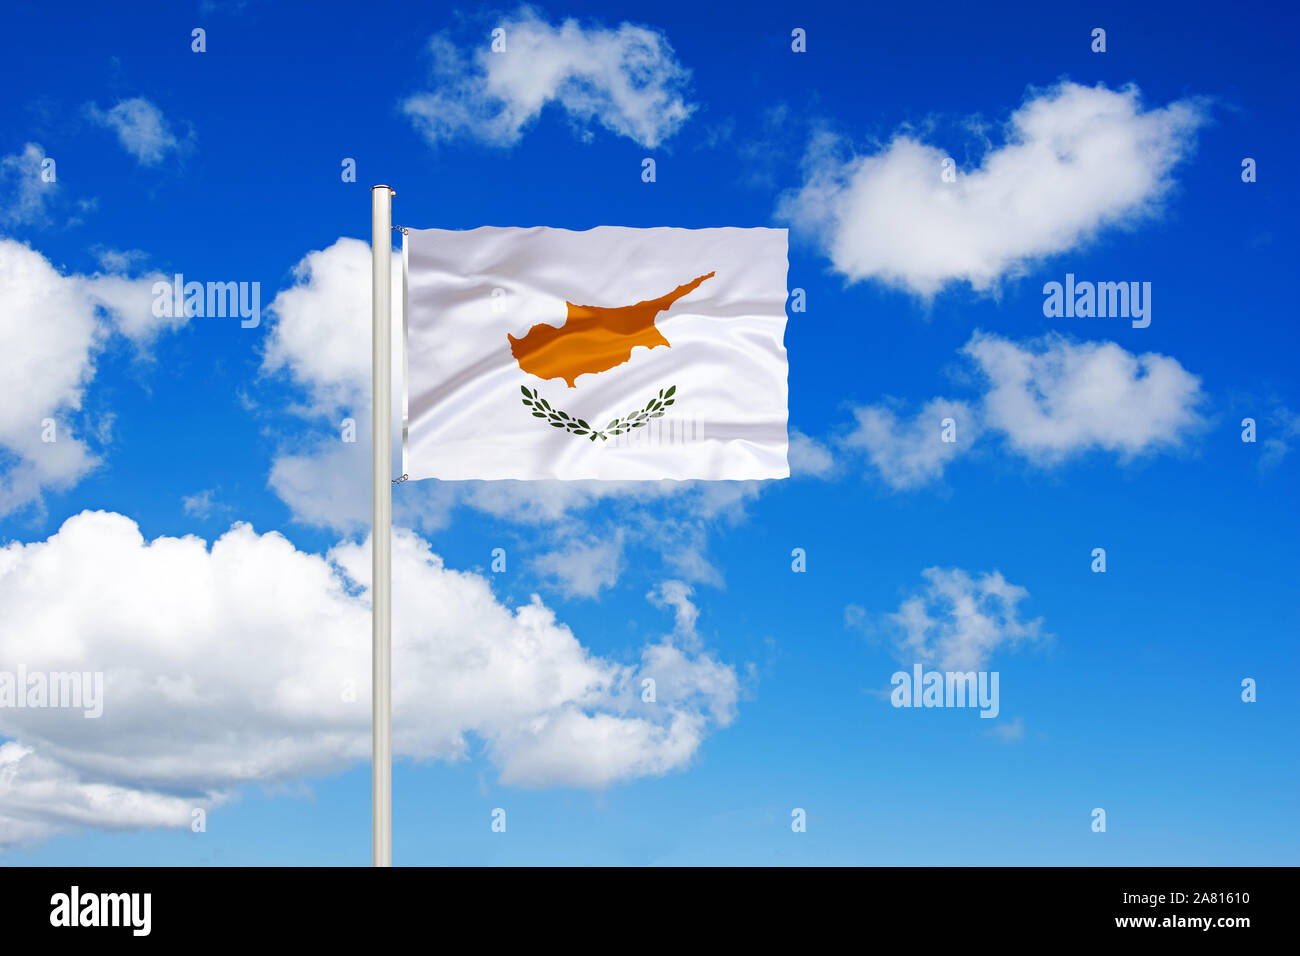 Zypern, Mittlerer Osten, geteilte Insel, türkisch, griechisch, Nationalfahne, Nationalflagge, Fahne, Flagge, Flaggenmast, Cumulus Wolken vor blauen Hi Foto Stock